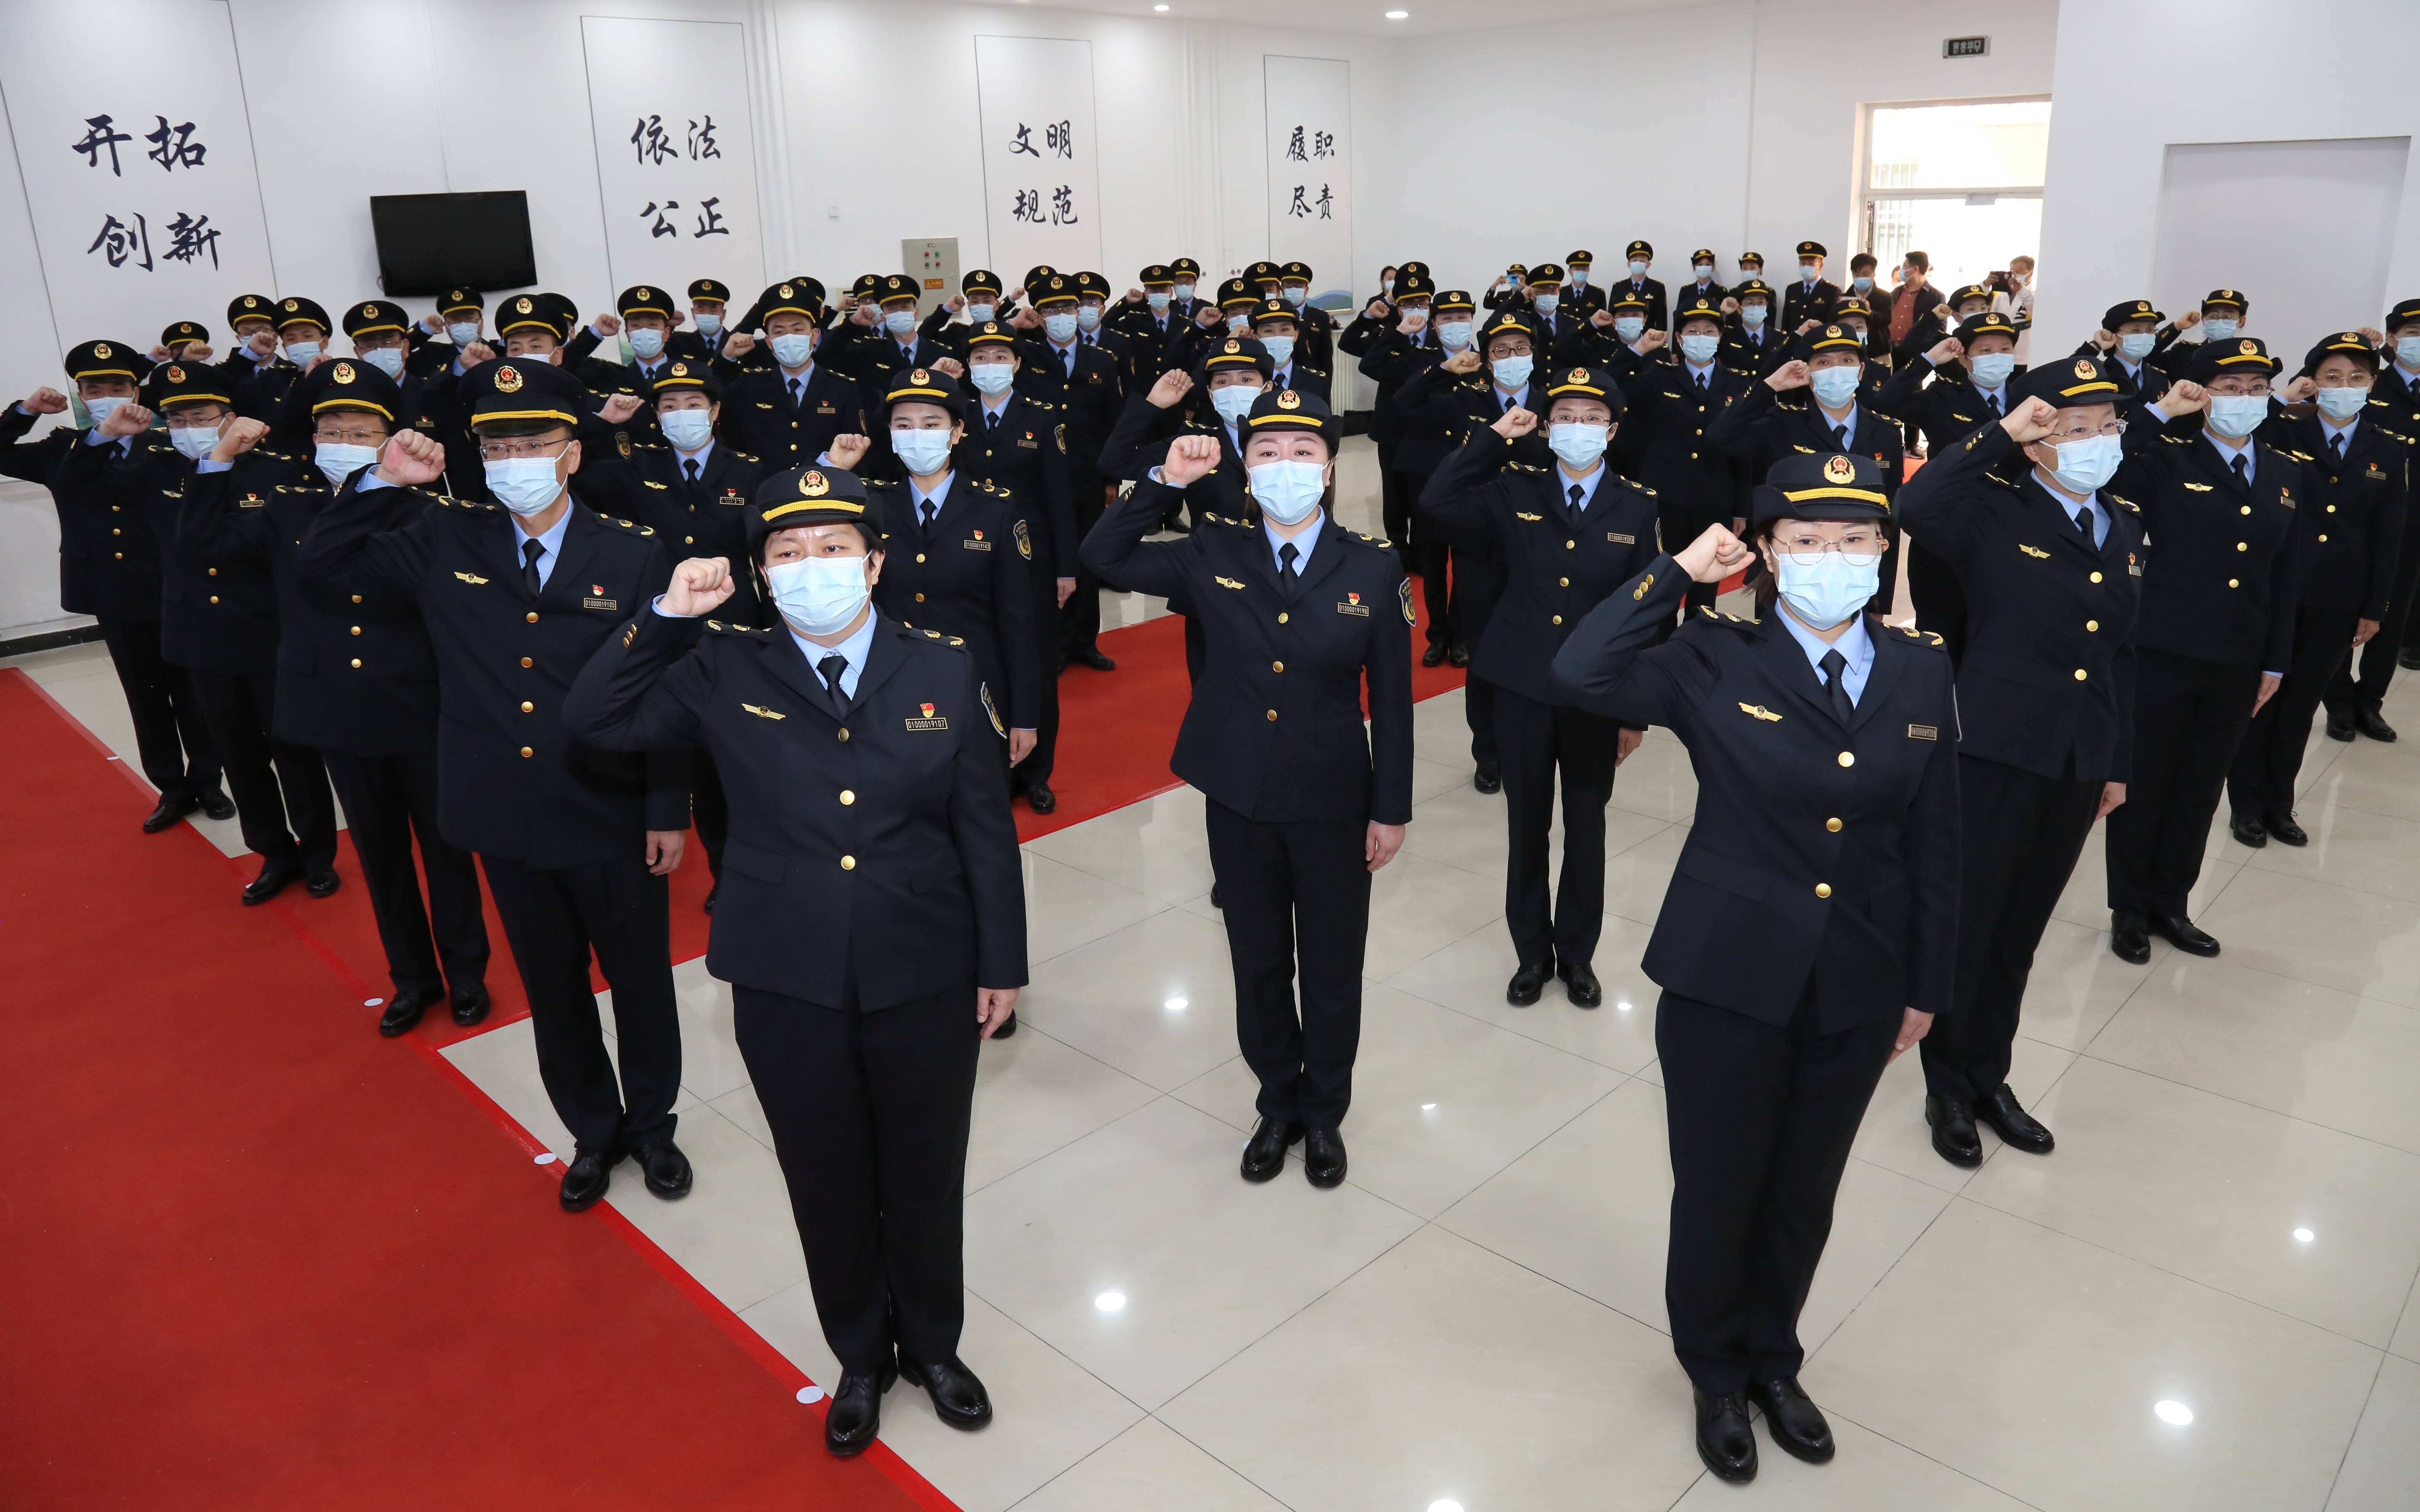 制服,臂章通用图案由盾牌,松枝以及中华人民共和国农业执法字样组成